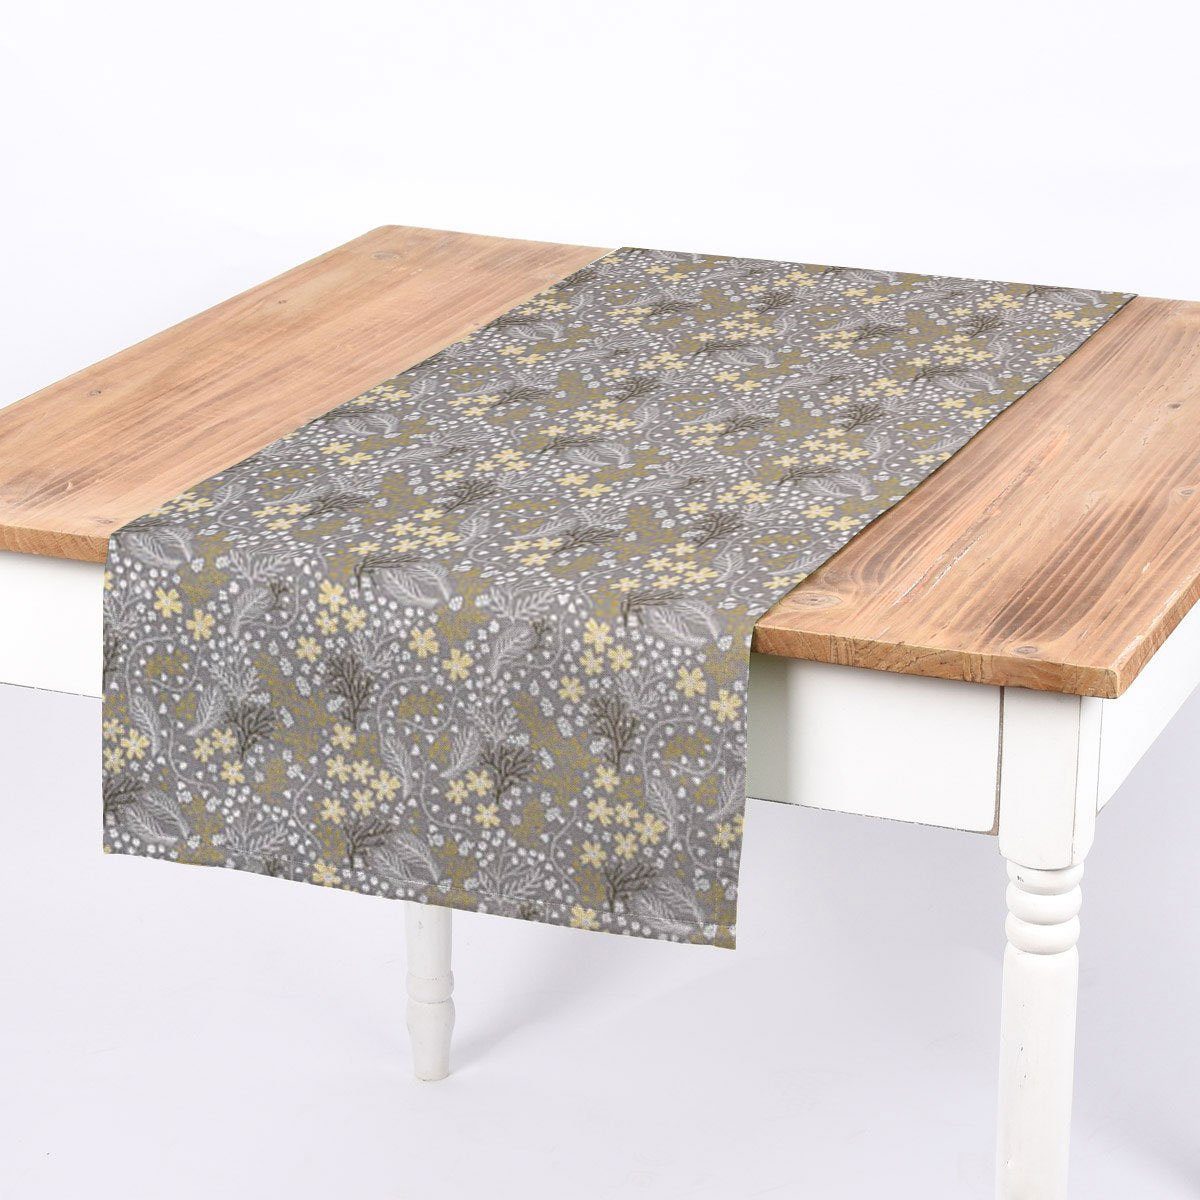 SCHÖNER LEBEN. Tischläufer SCHÖNER LEBEN. Tischläufer Blumen Gräser grau gelb 40x160cm, handmade